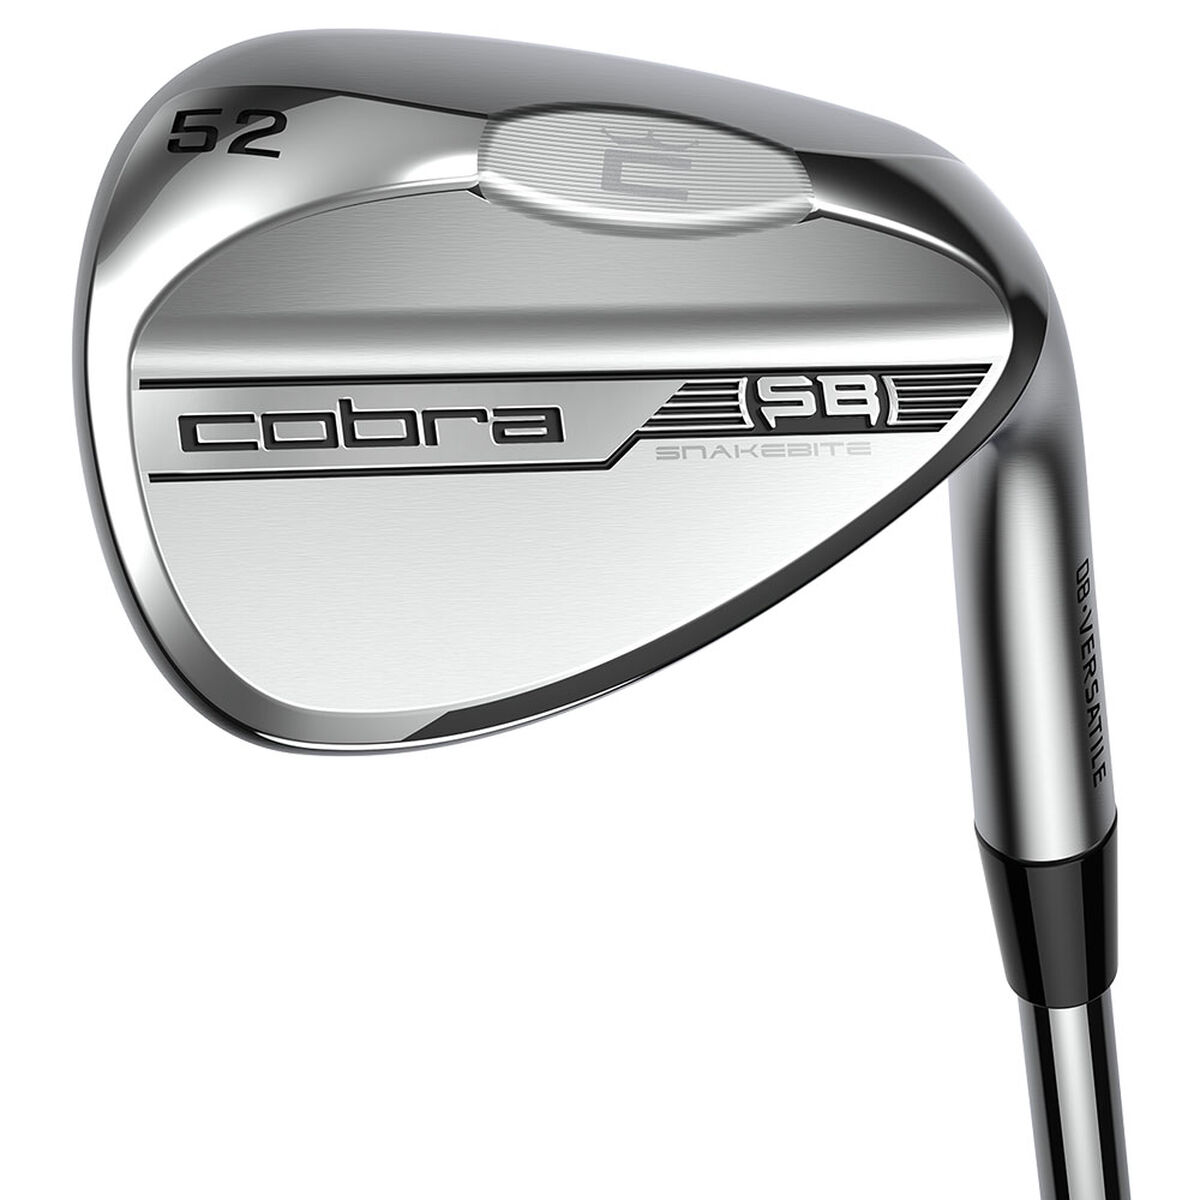 Cobra Golf Mens Silver Snakebite V Right Hand Golf Wedge, Size: 52deg | American Golf, 52deg